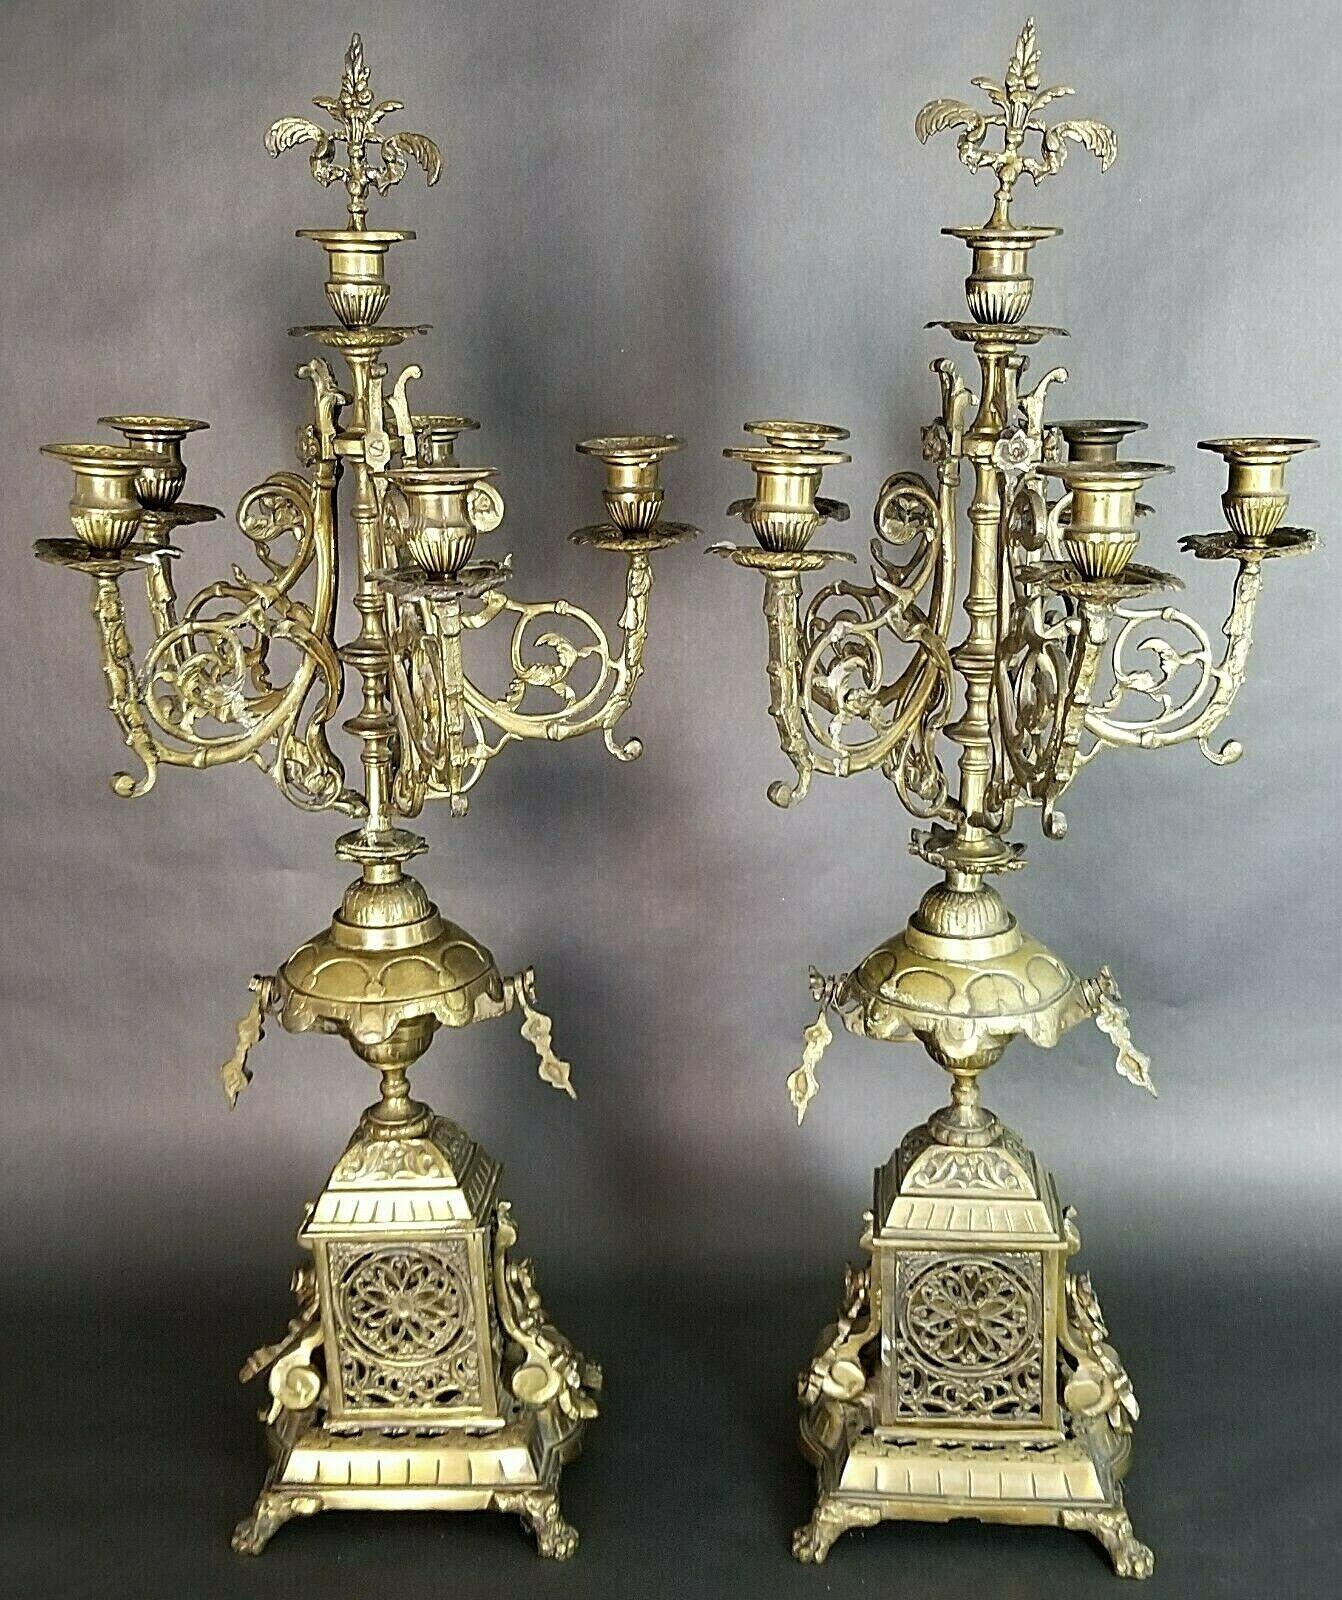 Paar antike italienische verziert Bronze Französisch Louis XV Stil Rokoko 6 Punkt Kandelaber

In der Mitte des 6. Kerzenhalters befindet sich ein abnehmbarer Abschluss, der auch als Kerzenlöscher verwendet werden kann.

Ungefähre Maße
26 1/2